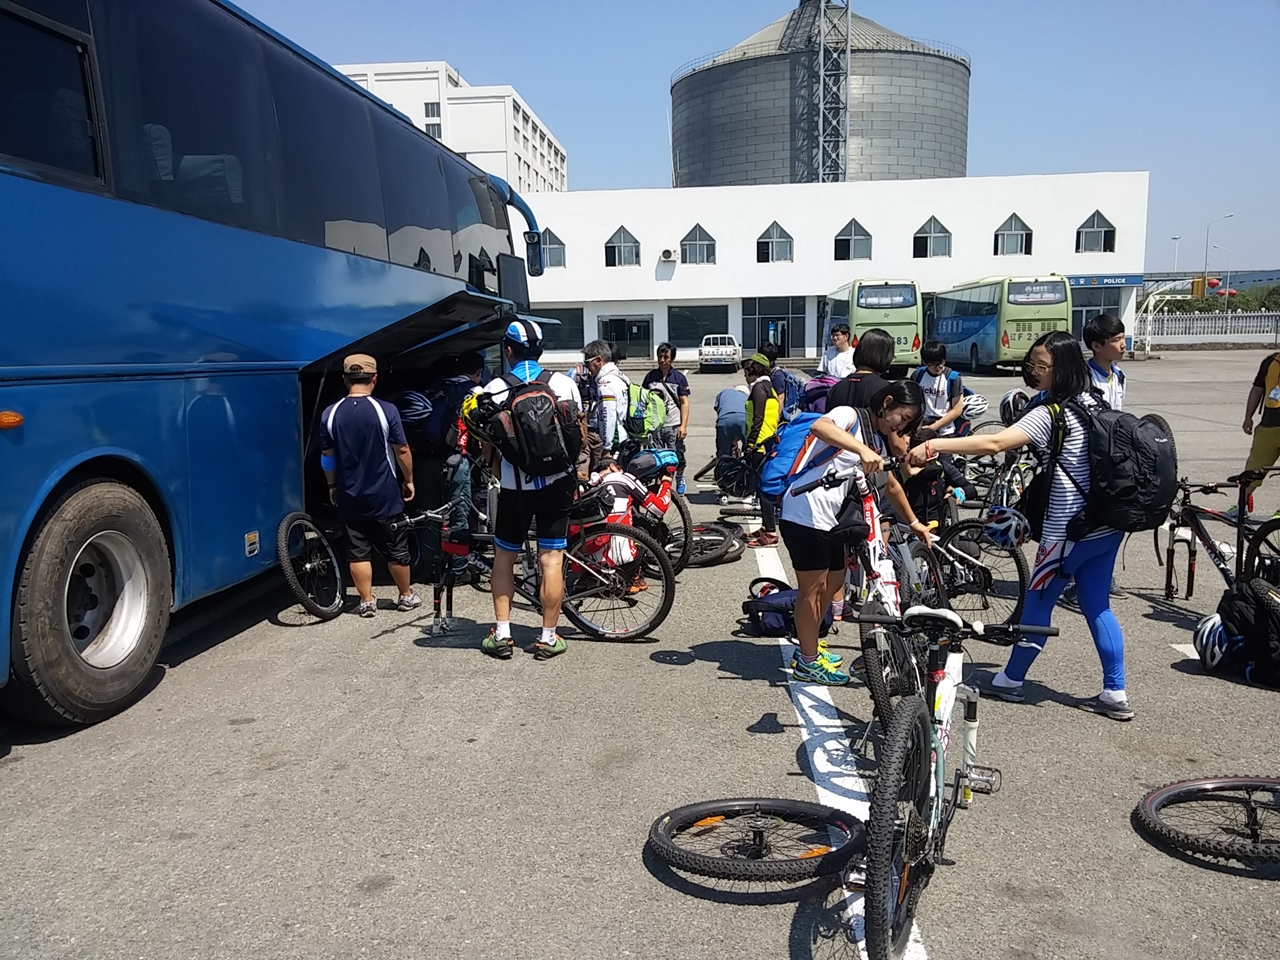 관광버스 짐칸에 자전거를 싣고 있다